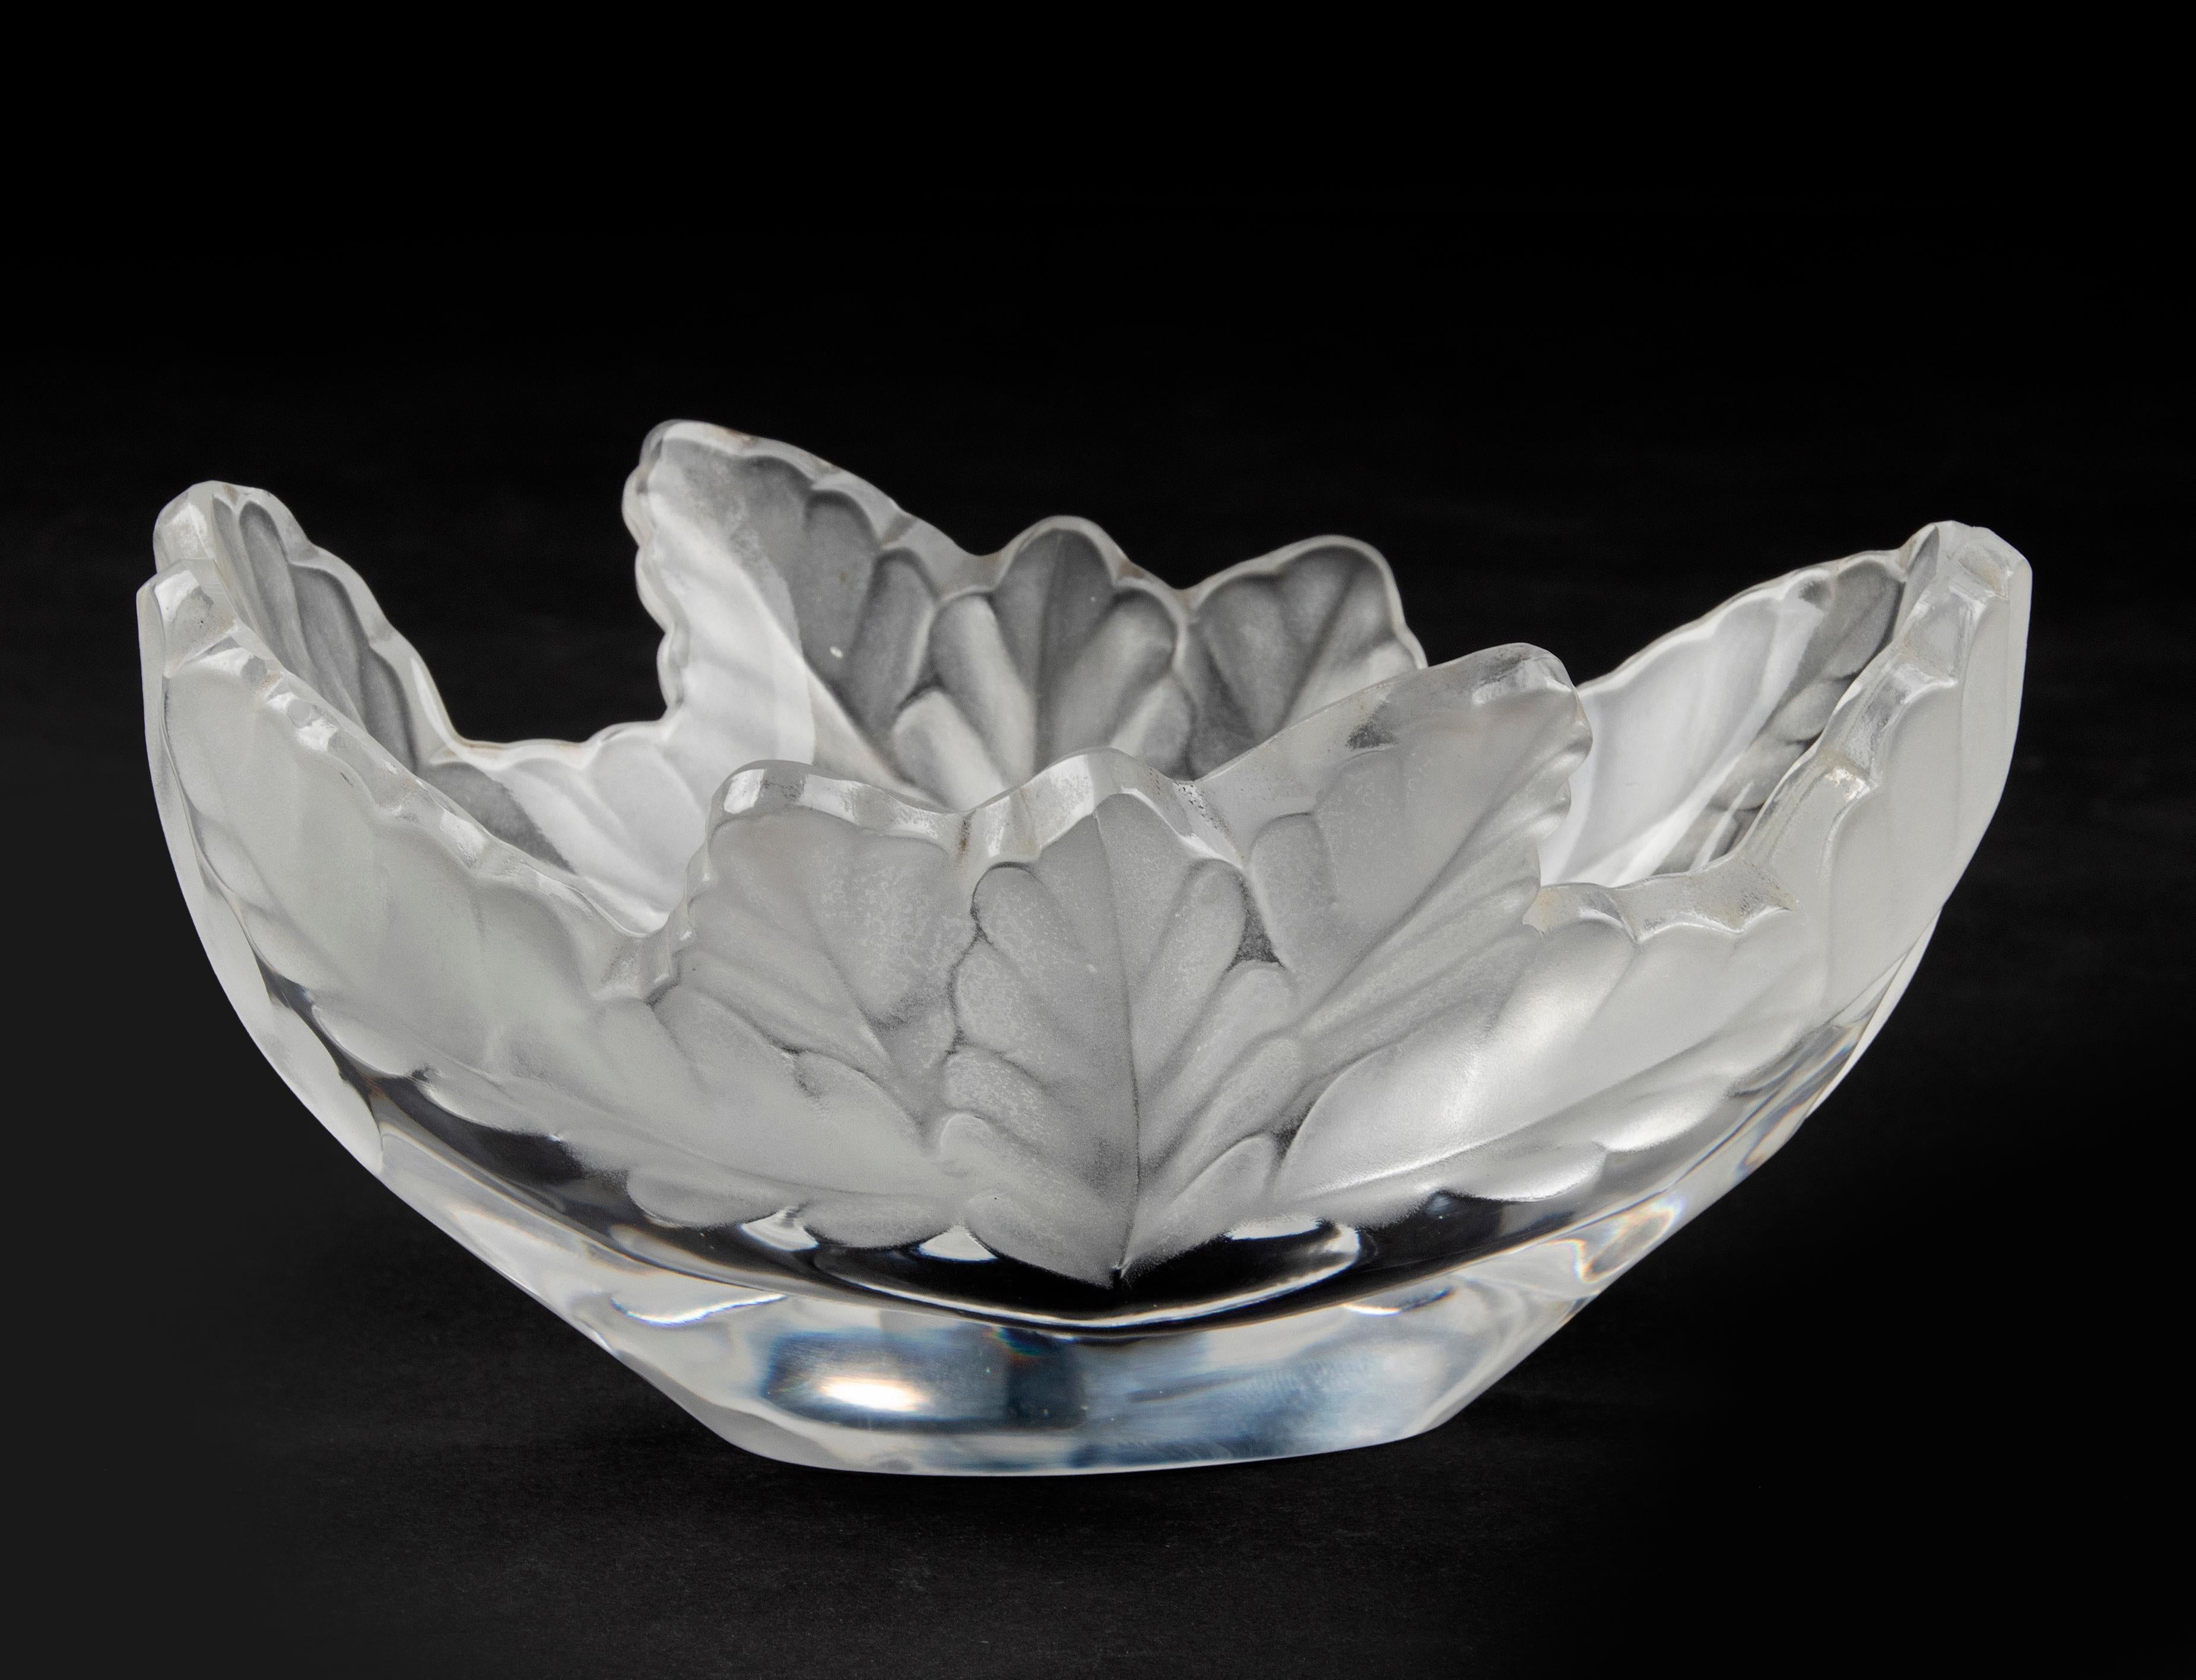 Magnifique bol en cristal de la marque française Lalique. Le cristal a la forme d'une feuille de chêne et est satiné à l'extérieur. Le nom du modèle est 